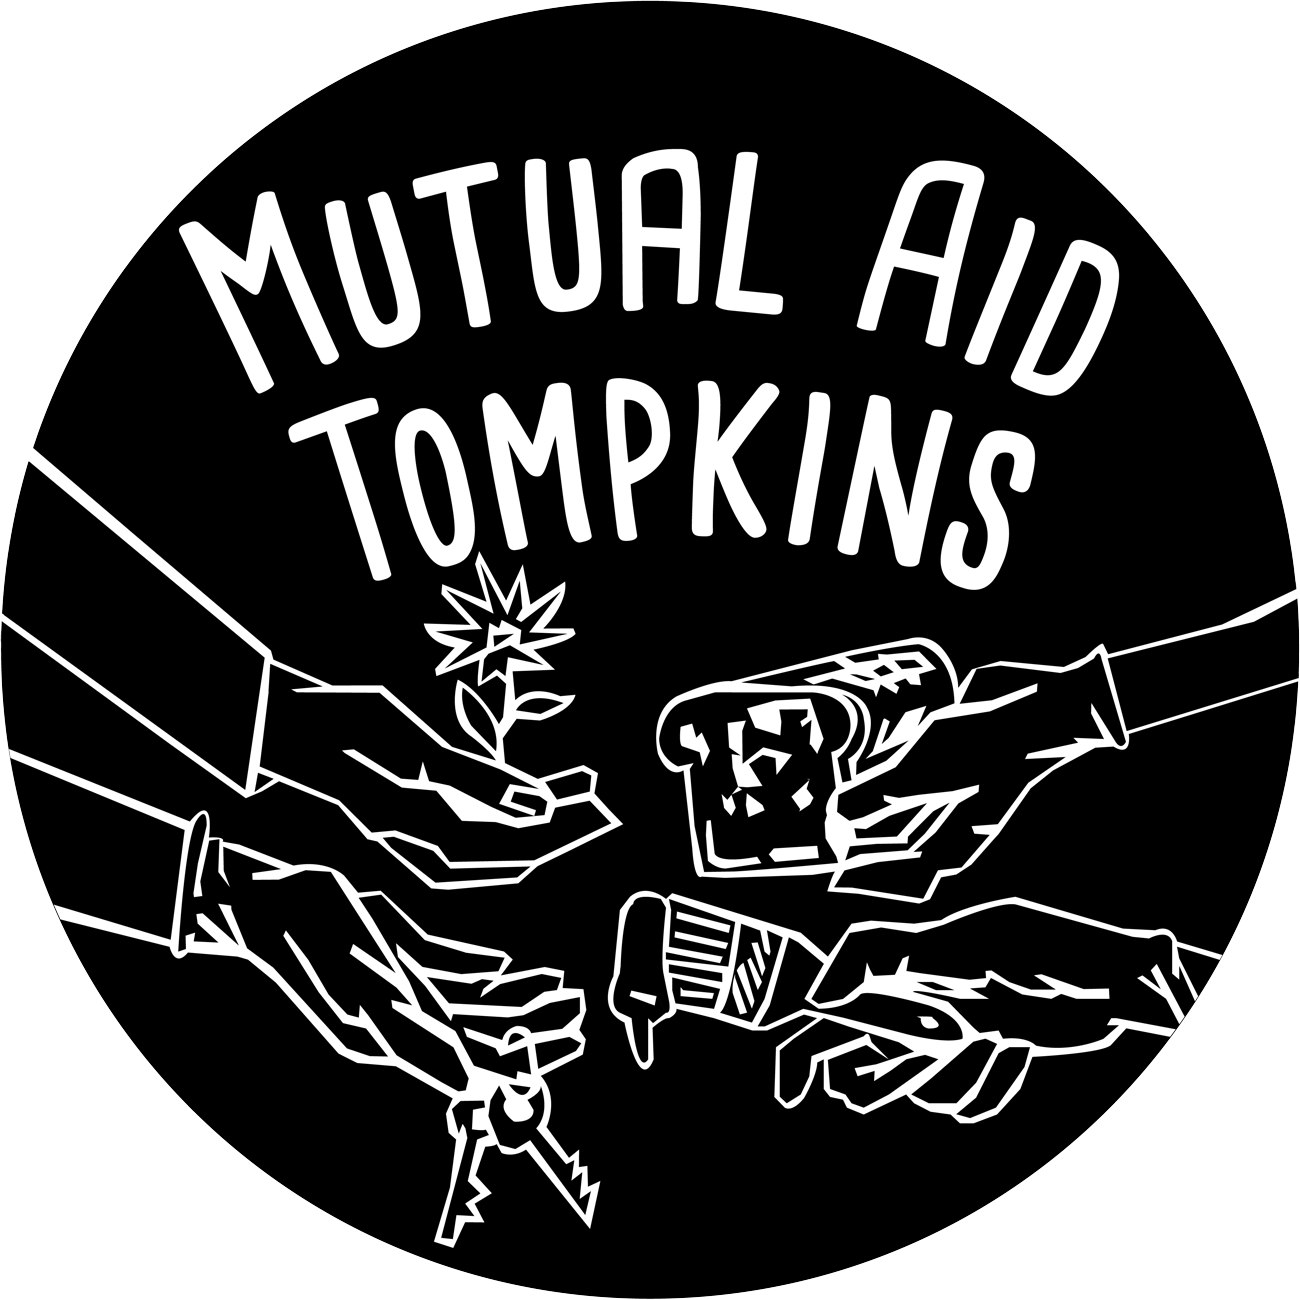 Mutual Aid Tompkins